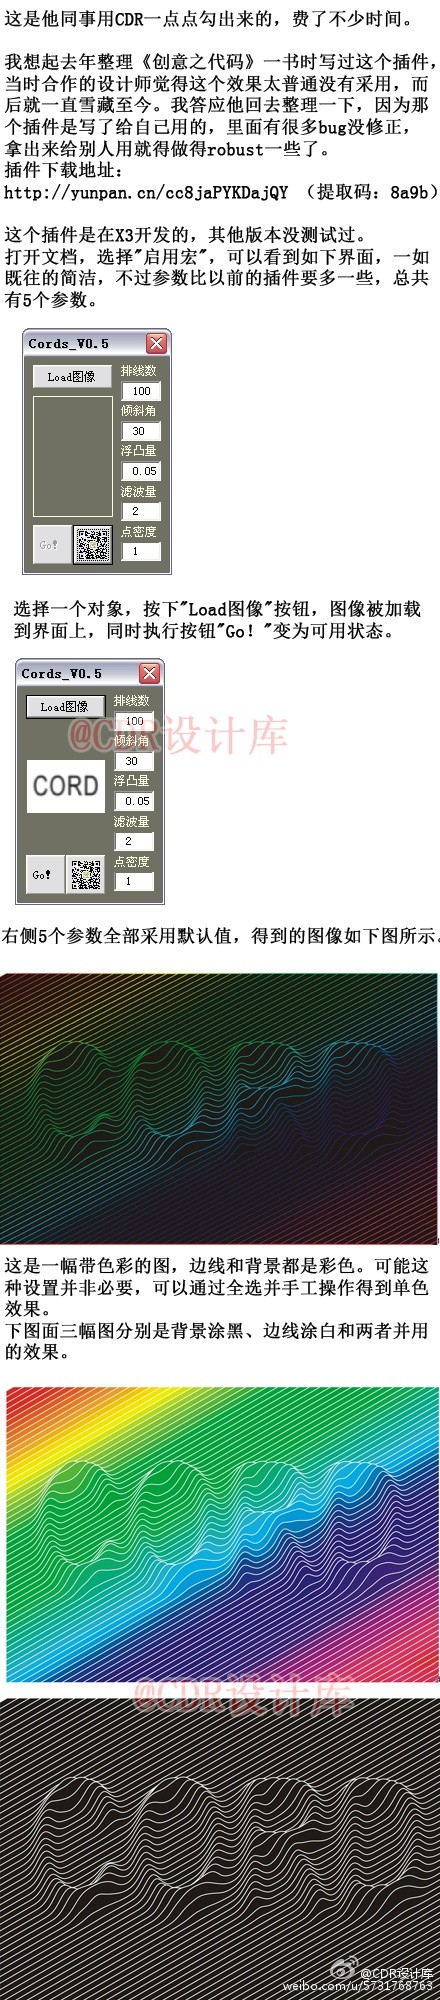 巧用CDR設計偽三維絲弦浮凸效果插件三聯